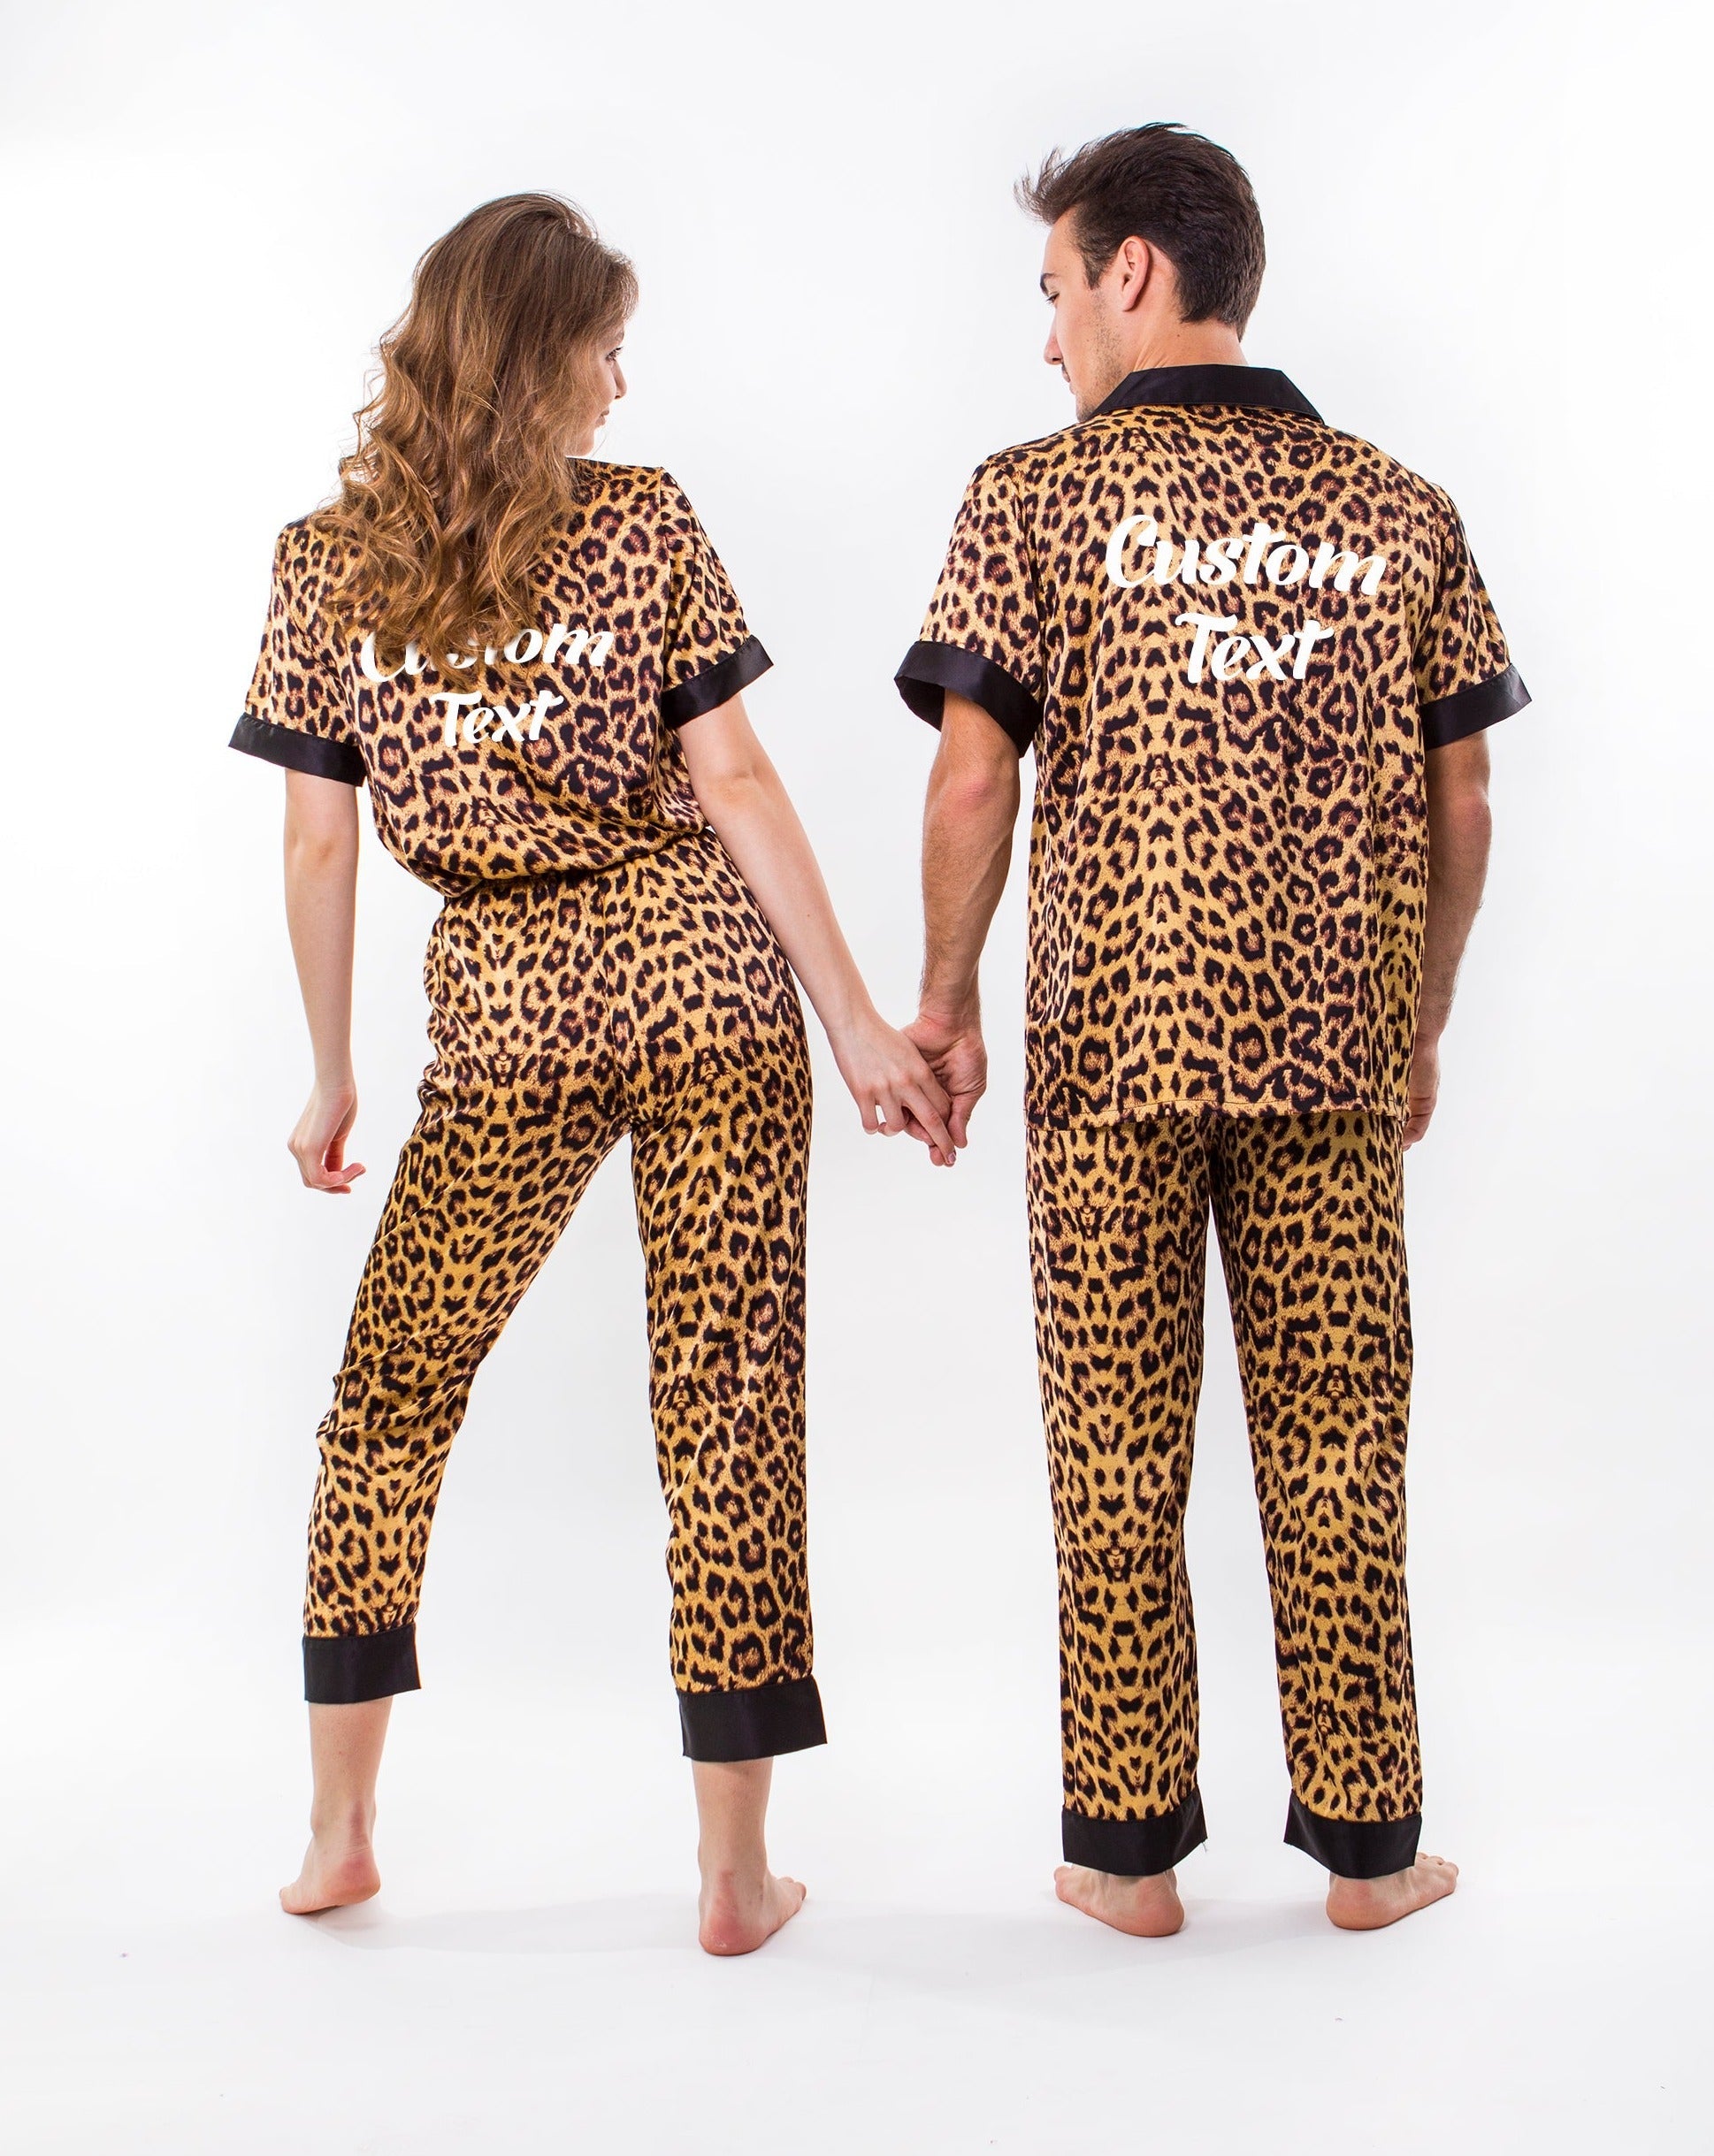 Honeymoon Gifts Pjs, – Custom Pajamas Anniversary Pajamas Couple, Satin Gift, for Wedding Sunny gift Xmas Leopard Set Miami Boutique Pajamas